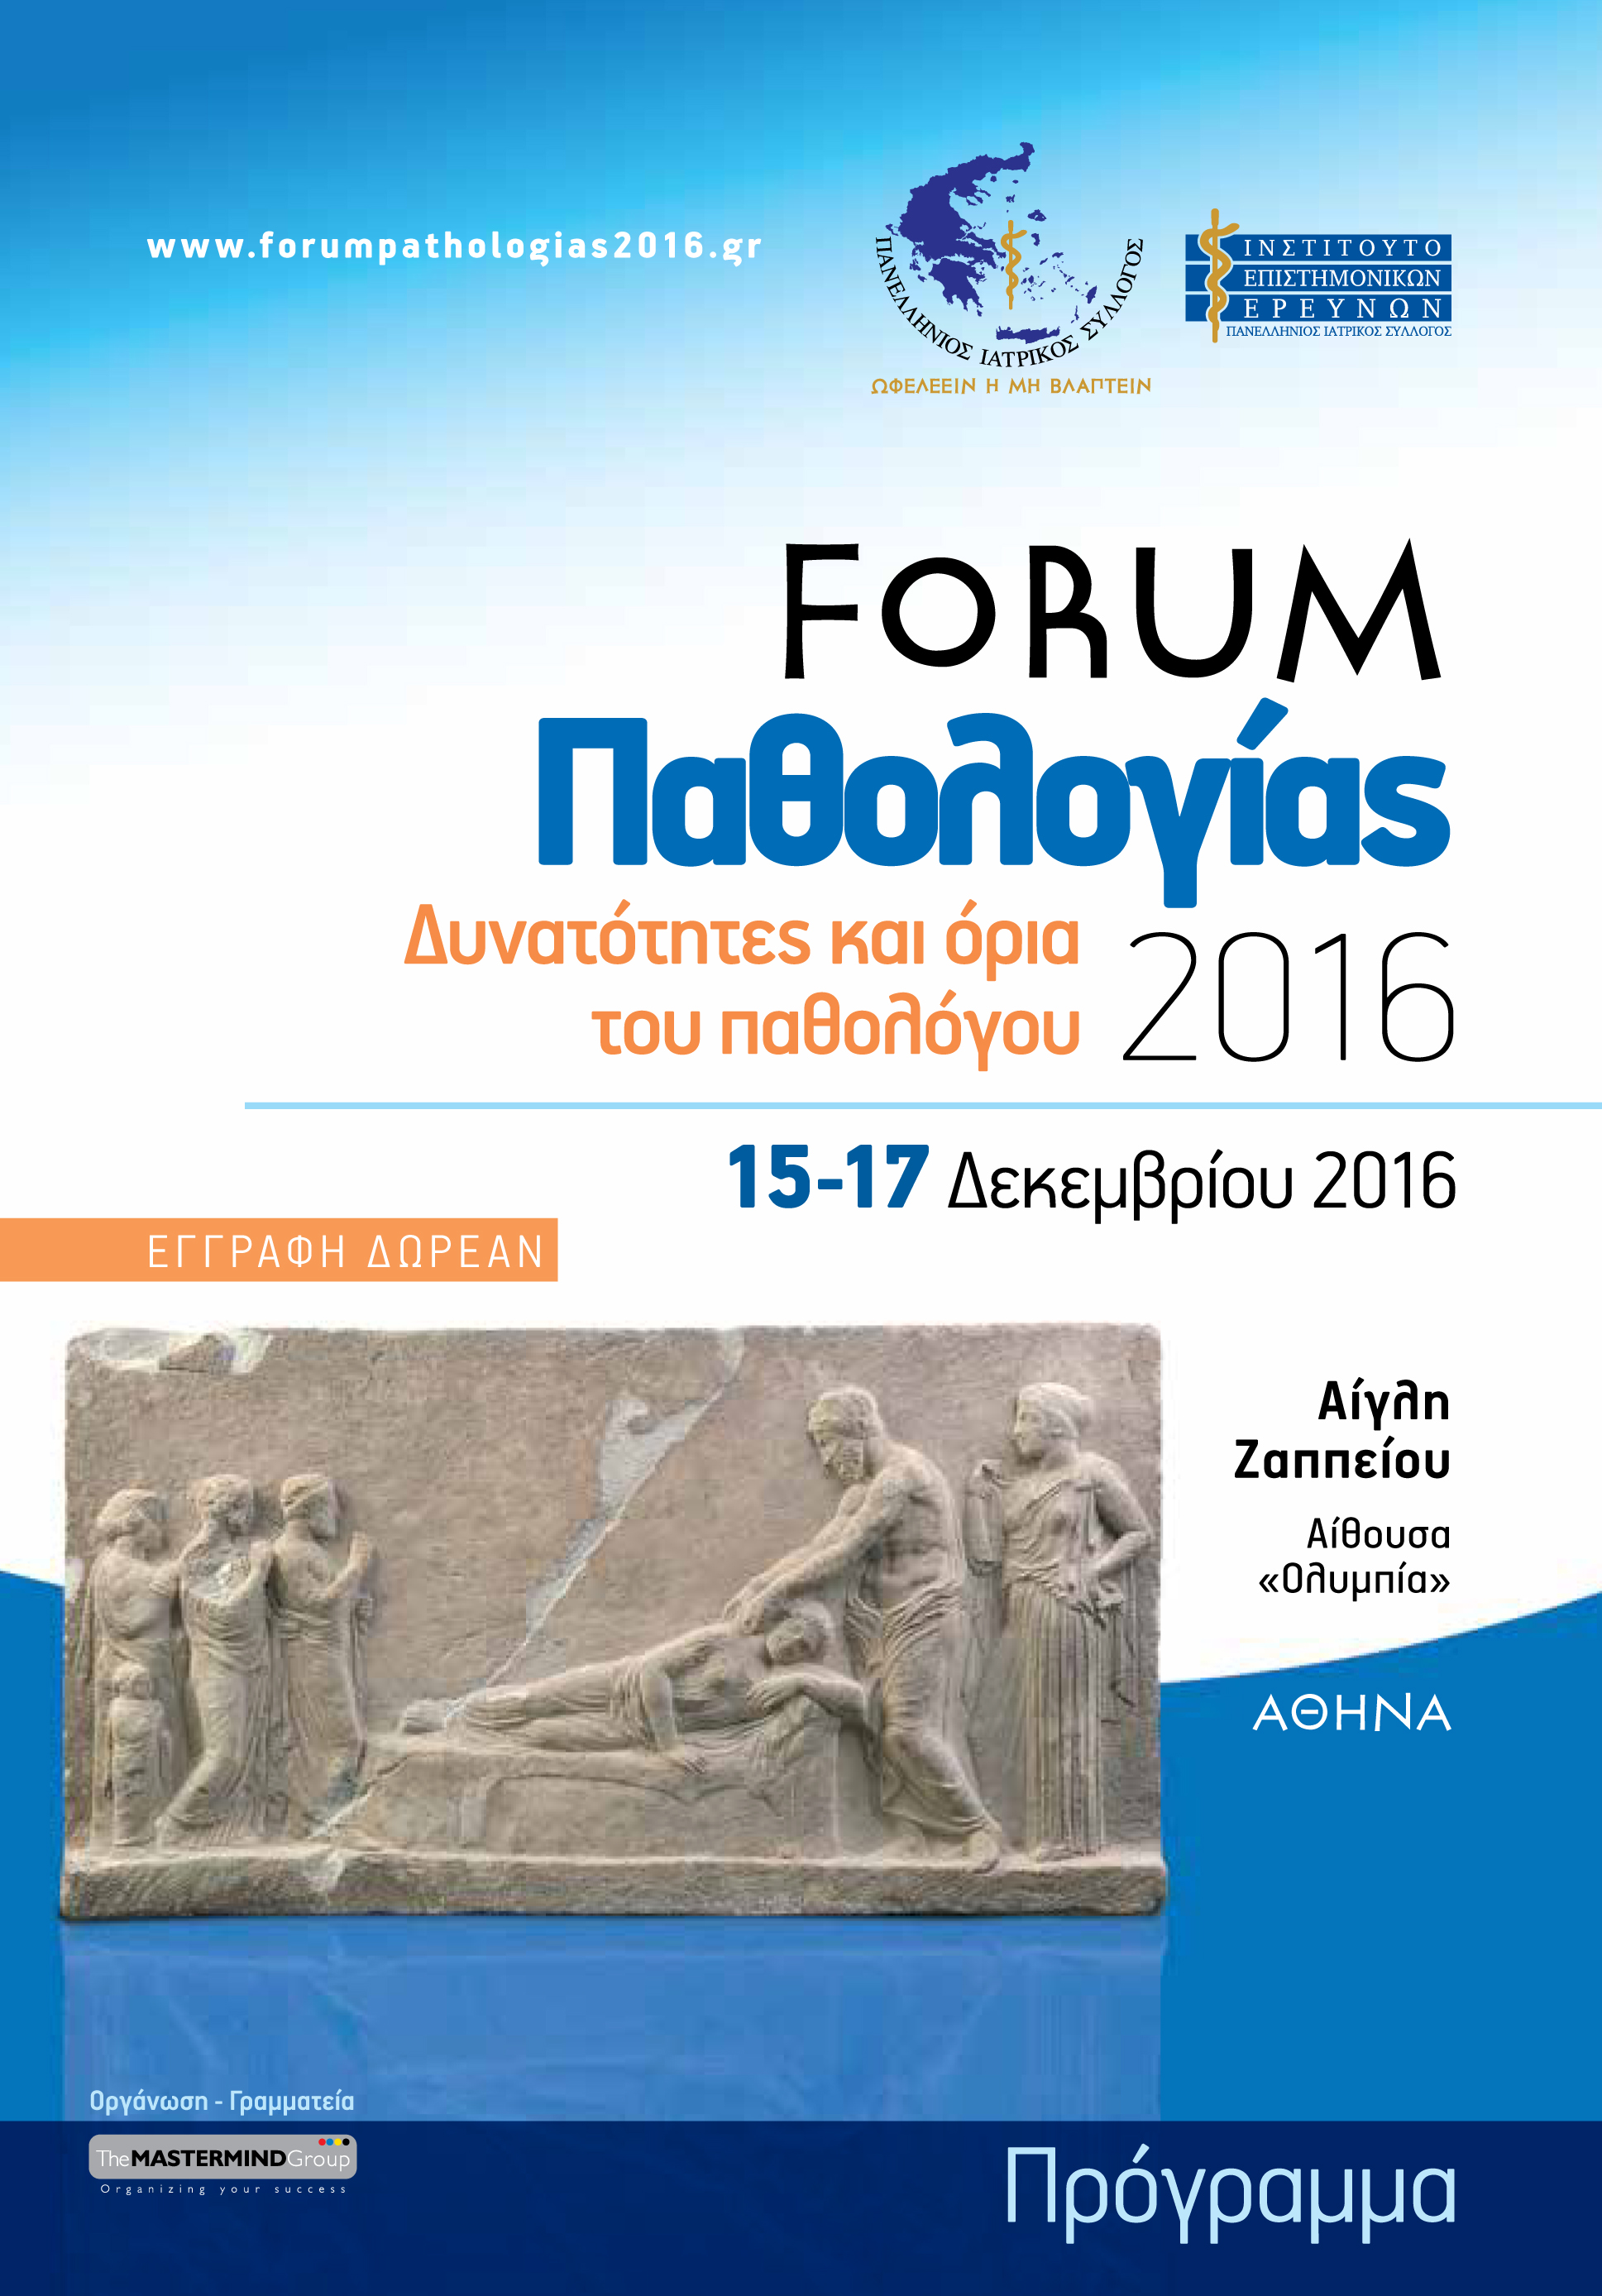 PathologyForum2016_program24-11-1601 αντίγραφο